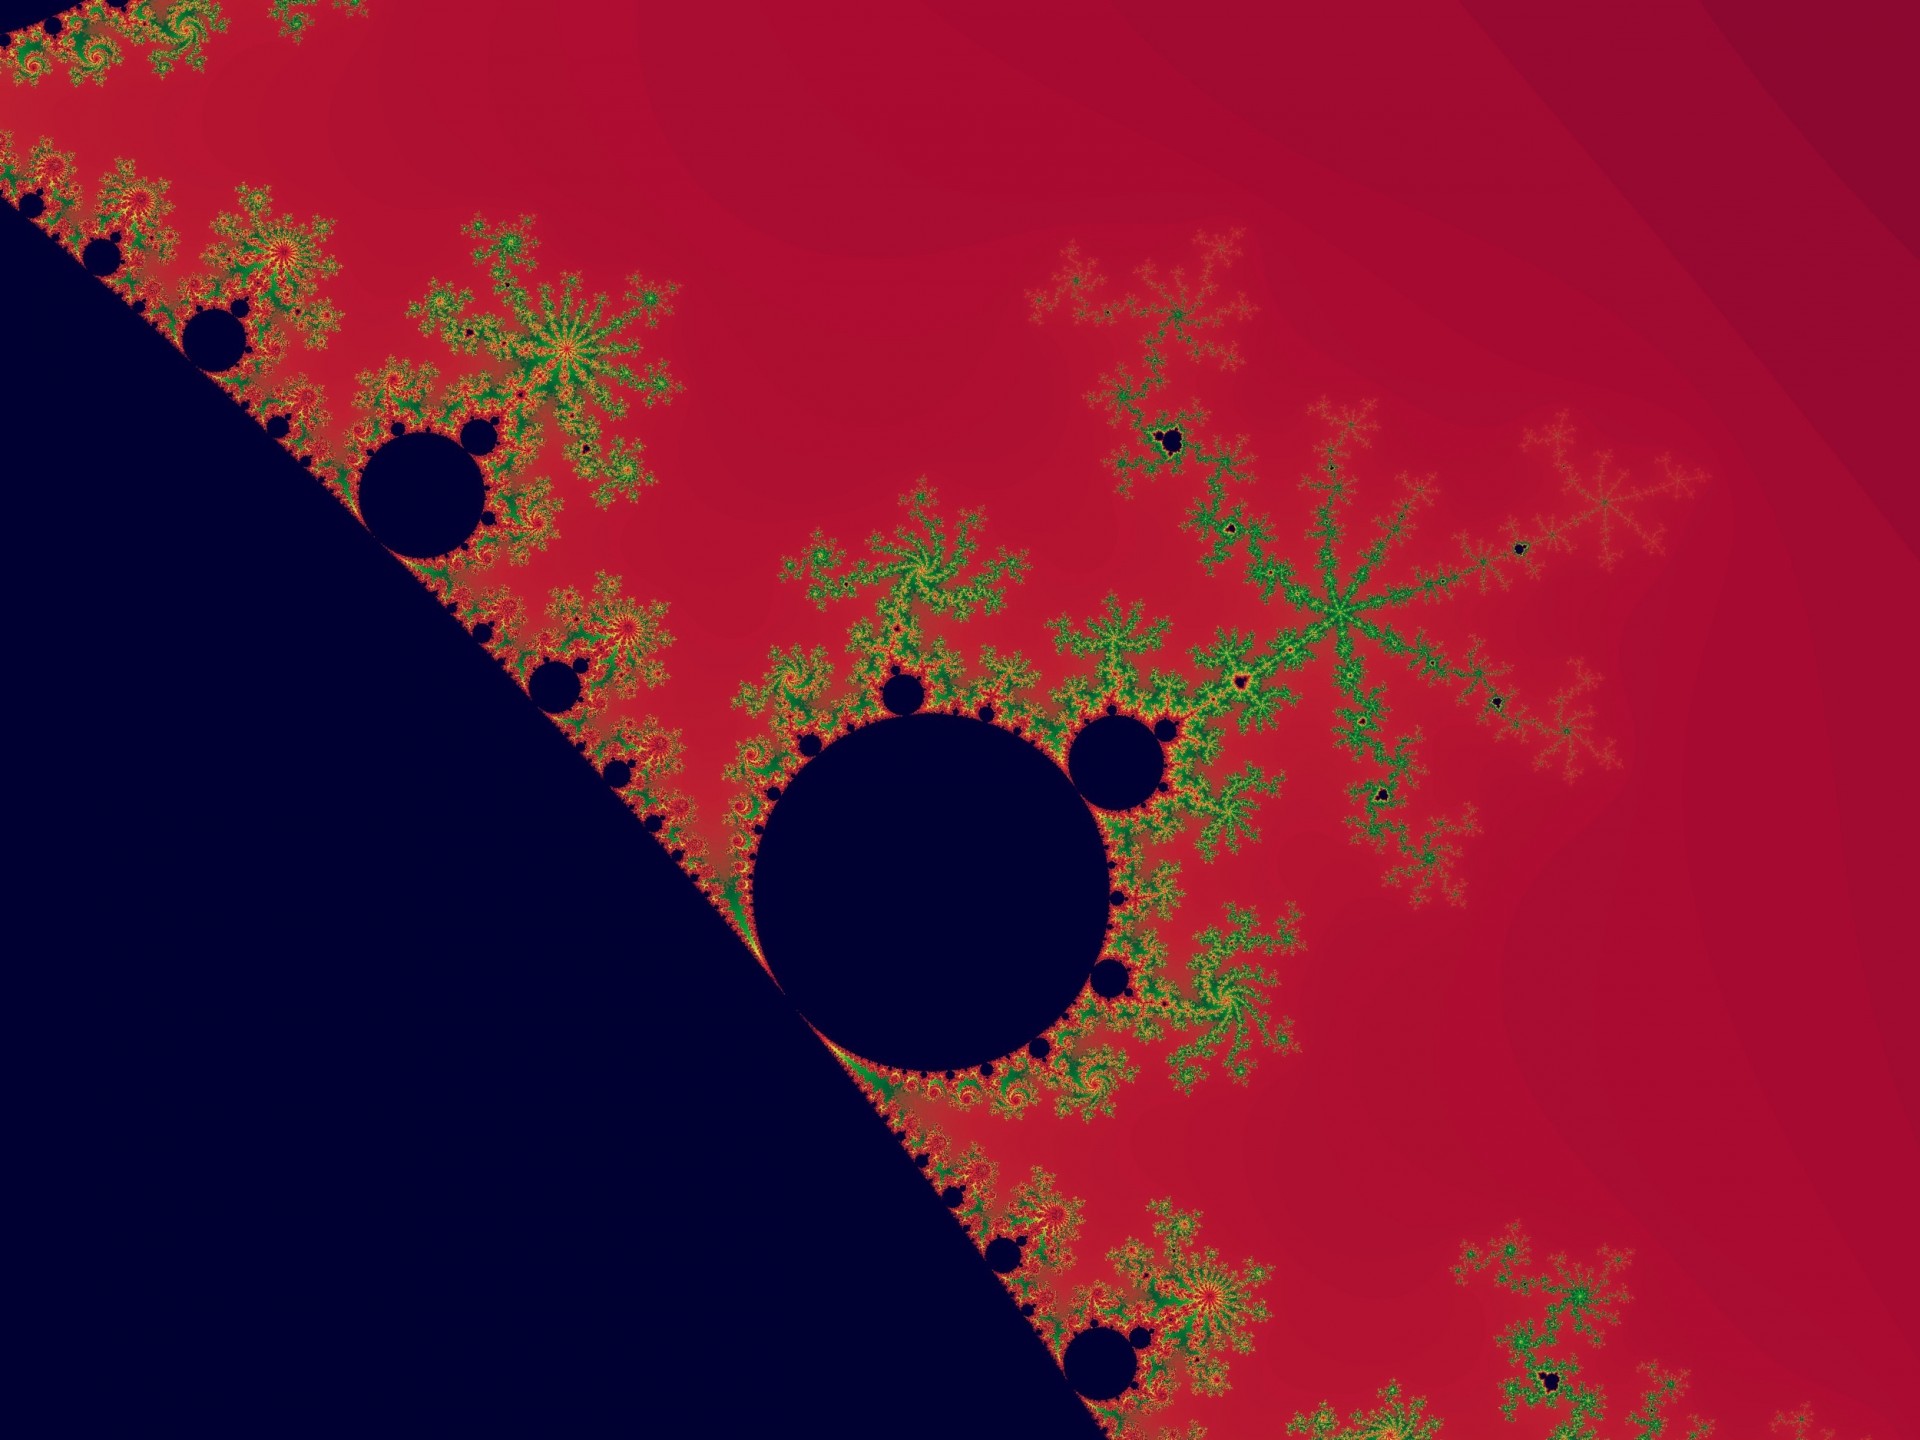 abstraction-fractal-mandelbrot